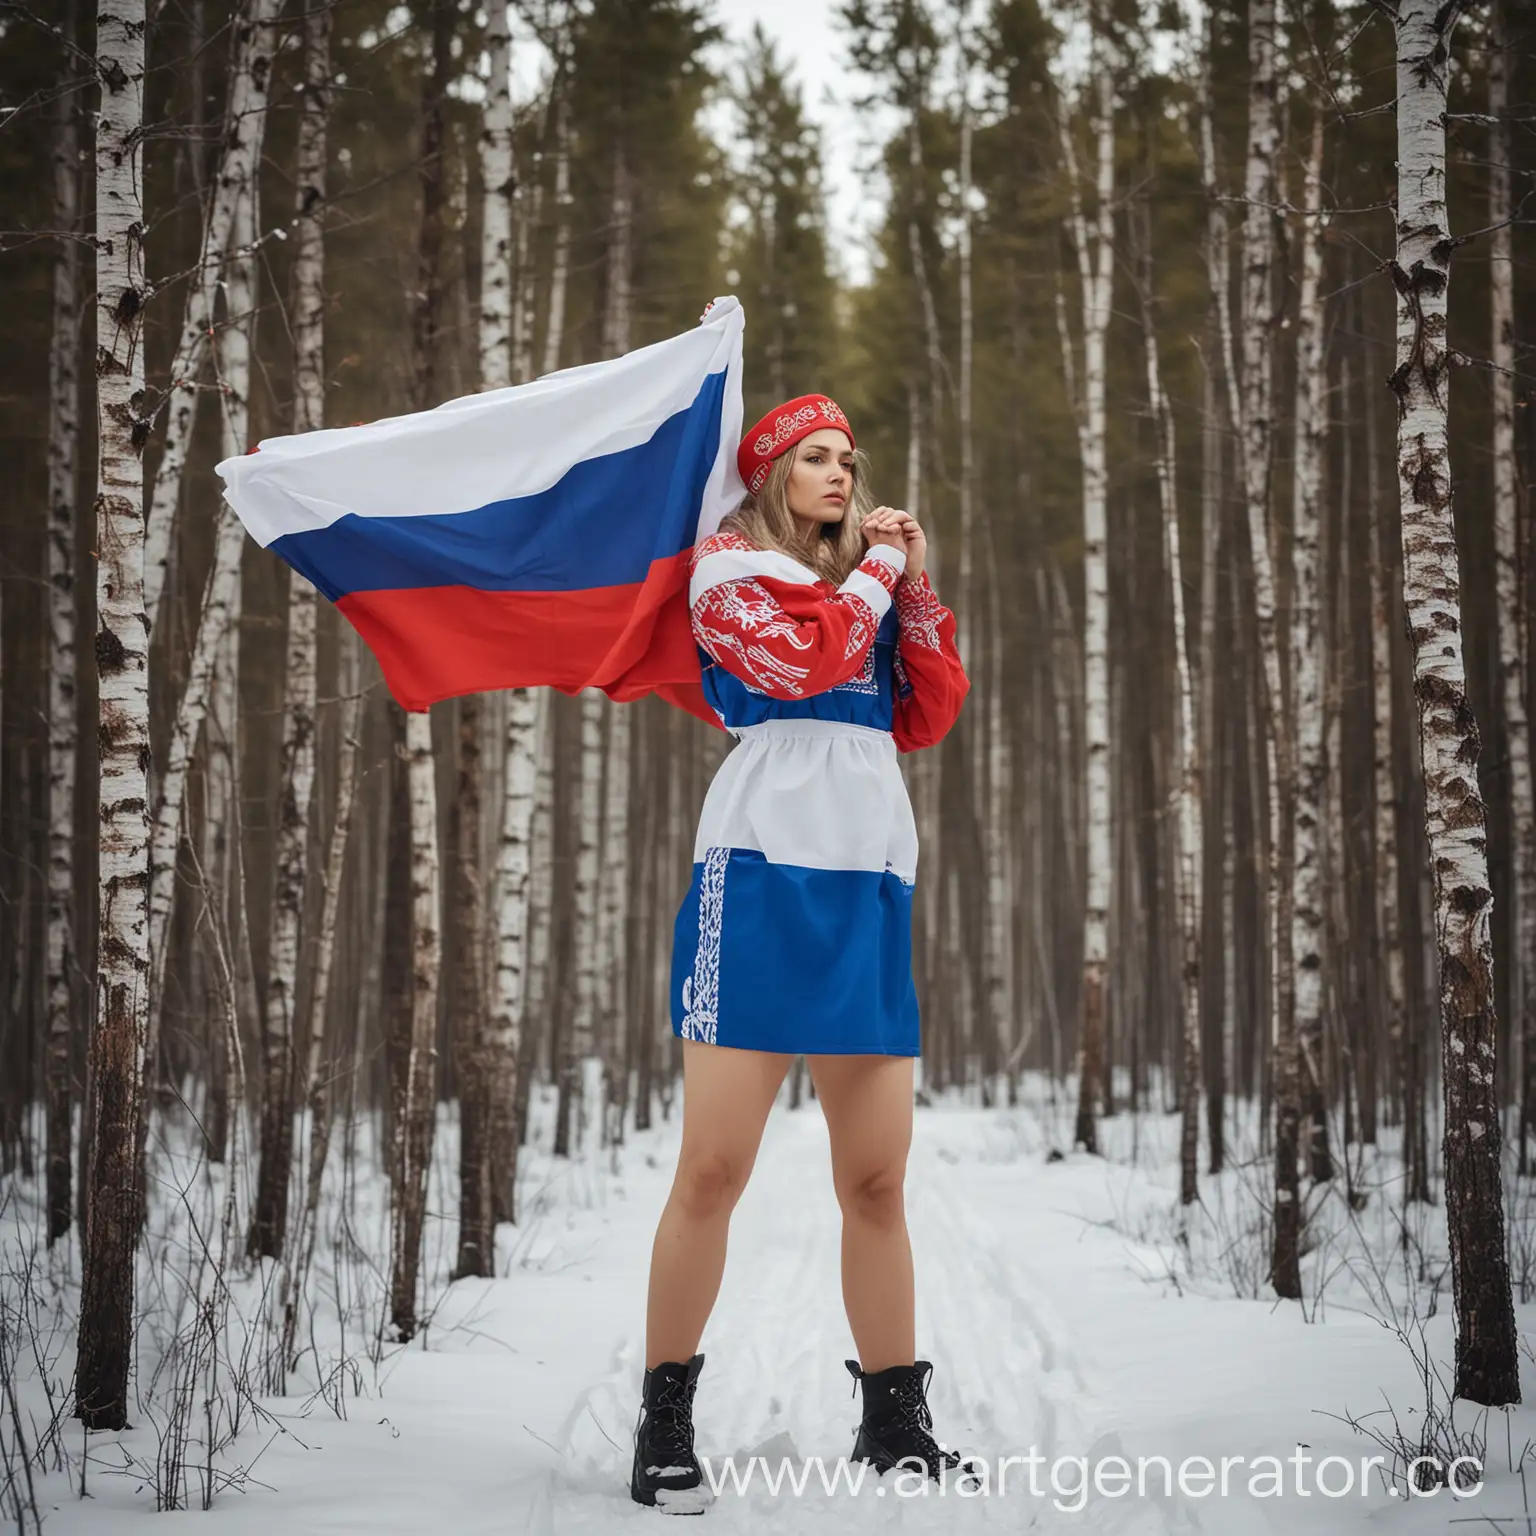 Женщина, которая олицетворяет Россию, на фоне тайга, сама женщина одета в простой наряд цвета флага России